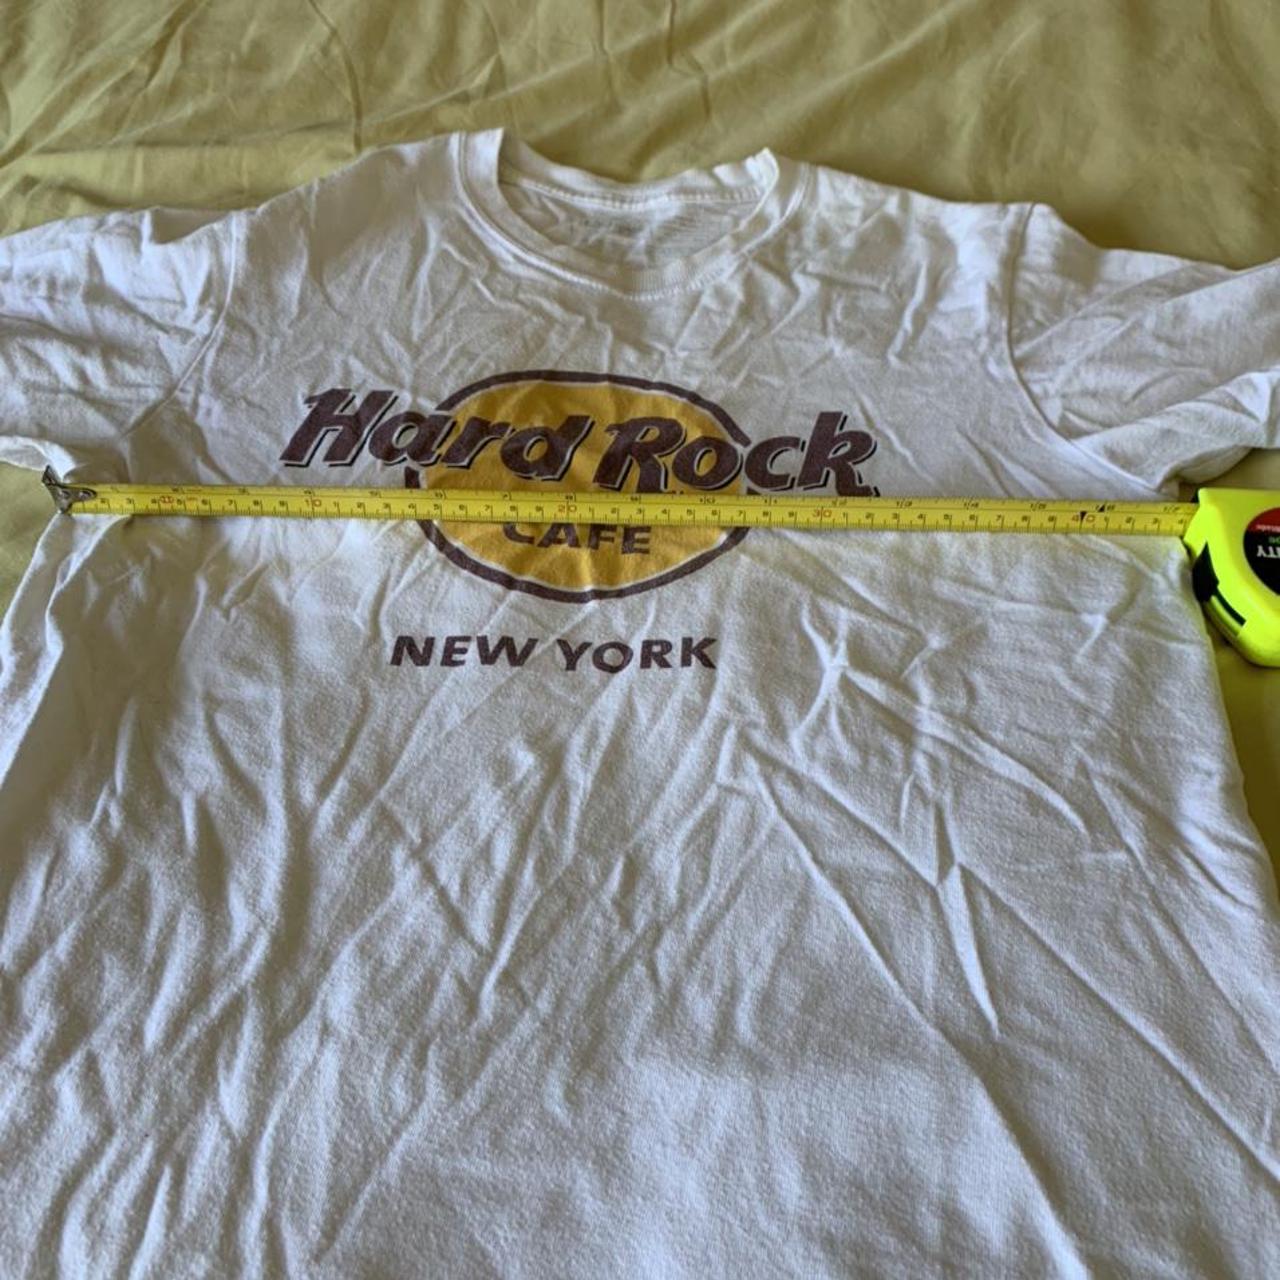 Product Image 3 - Hard Rock Cafe New York